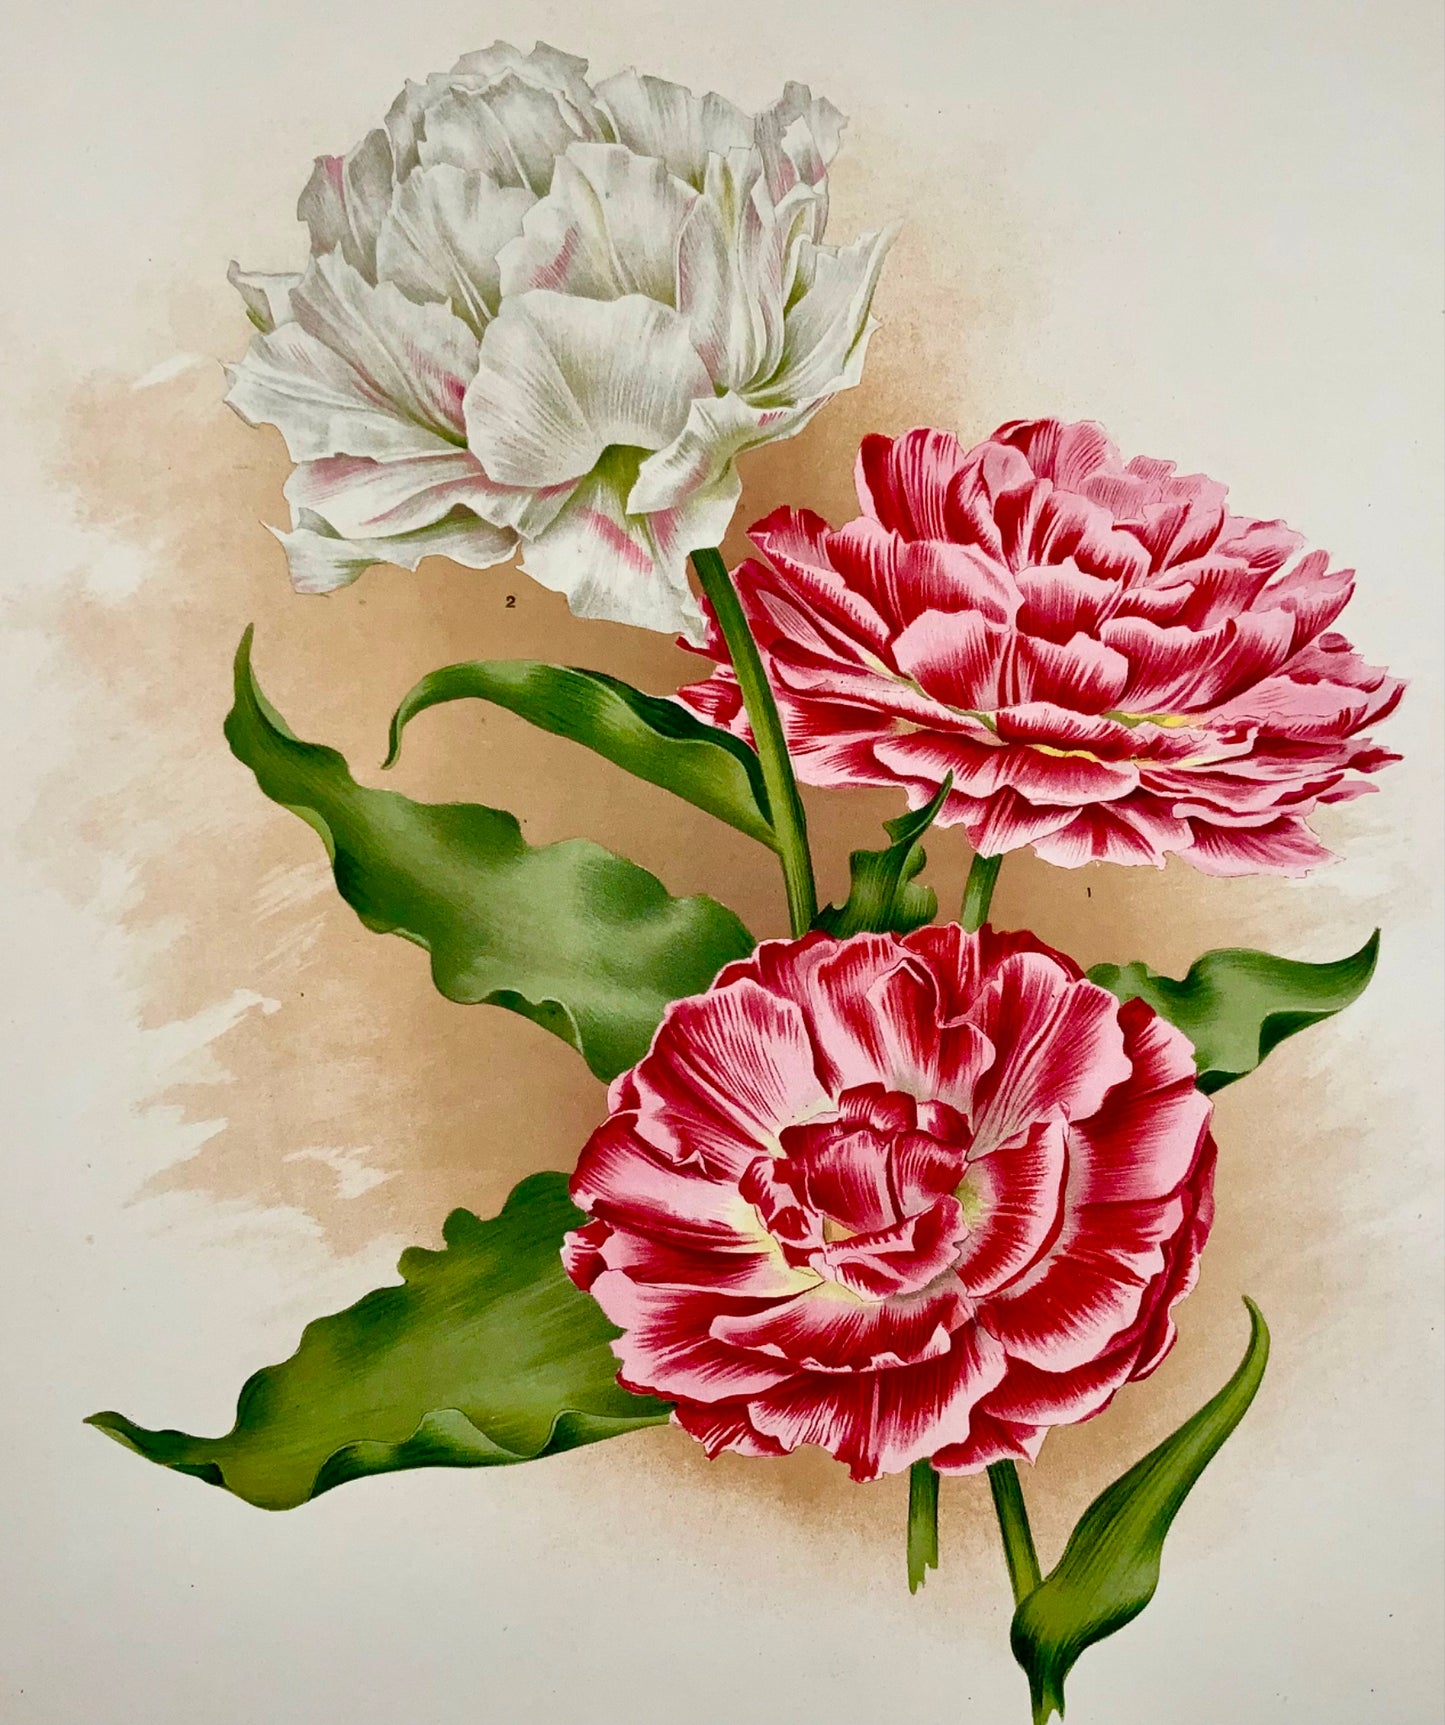 Tulipani Lord Beaconsfield del 1901 - Florilegium Harlemense - 36 cm - Botanica